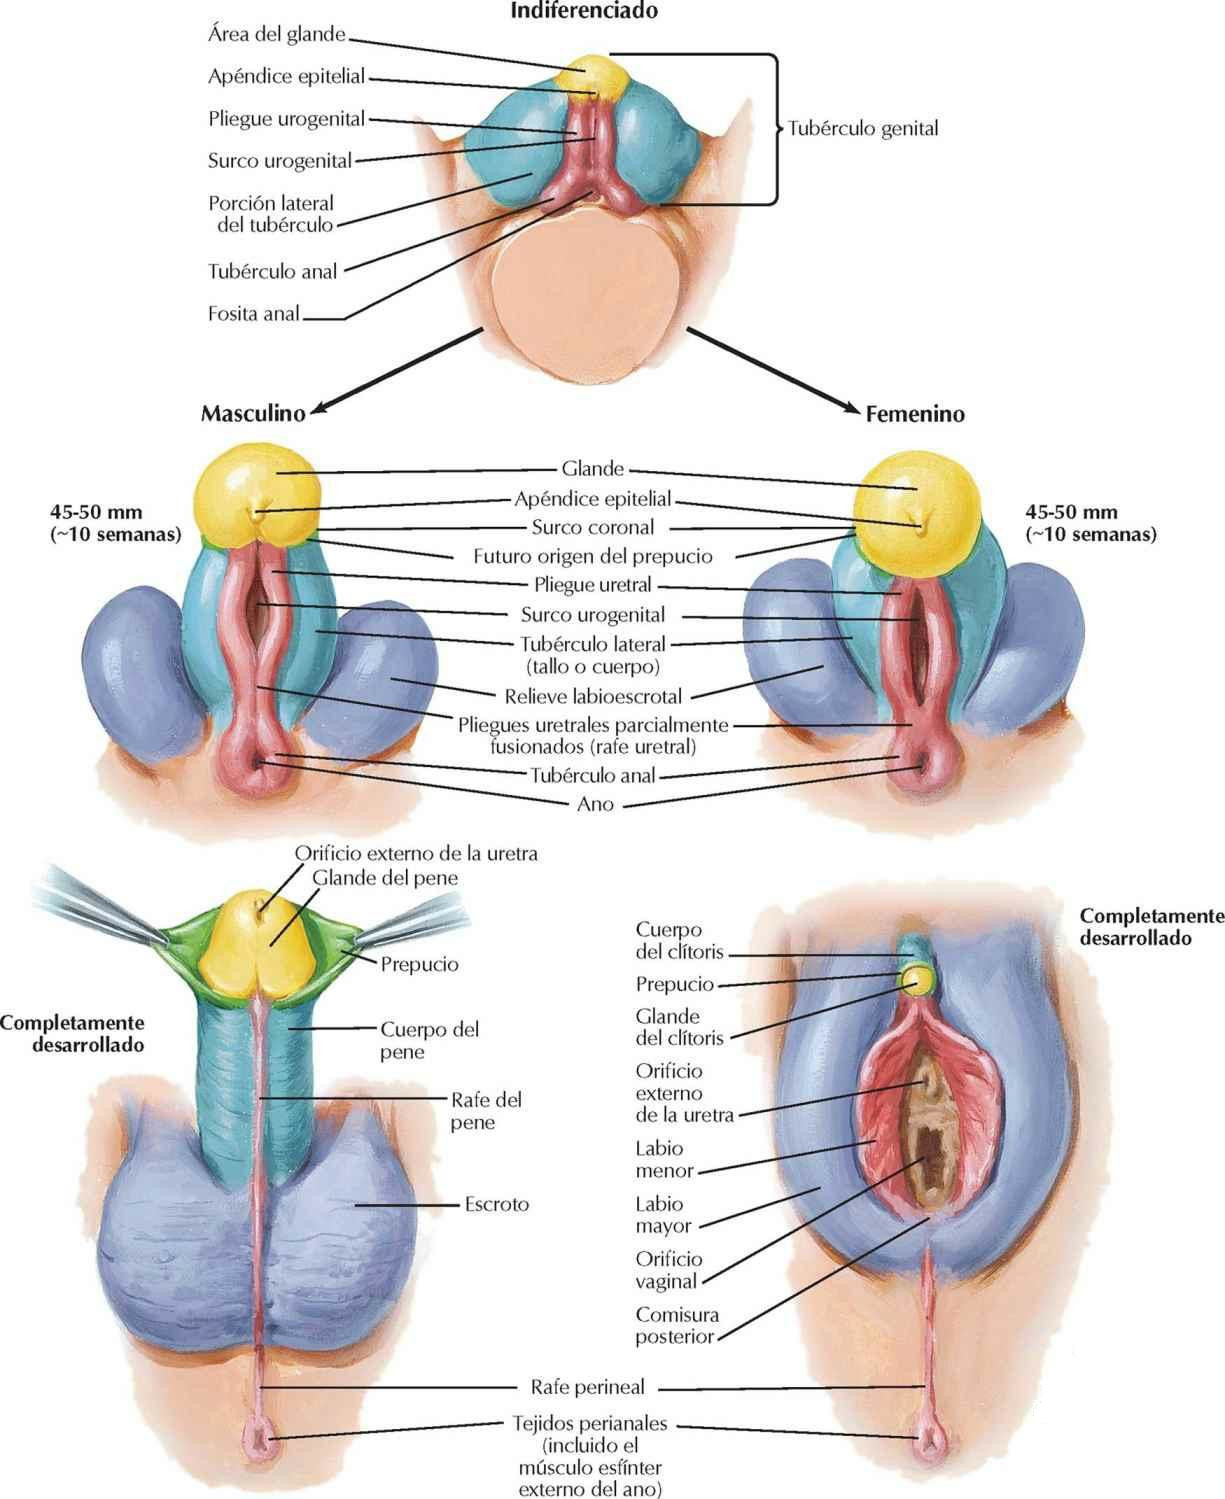 Estructuras homólogas de los genitales externos